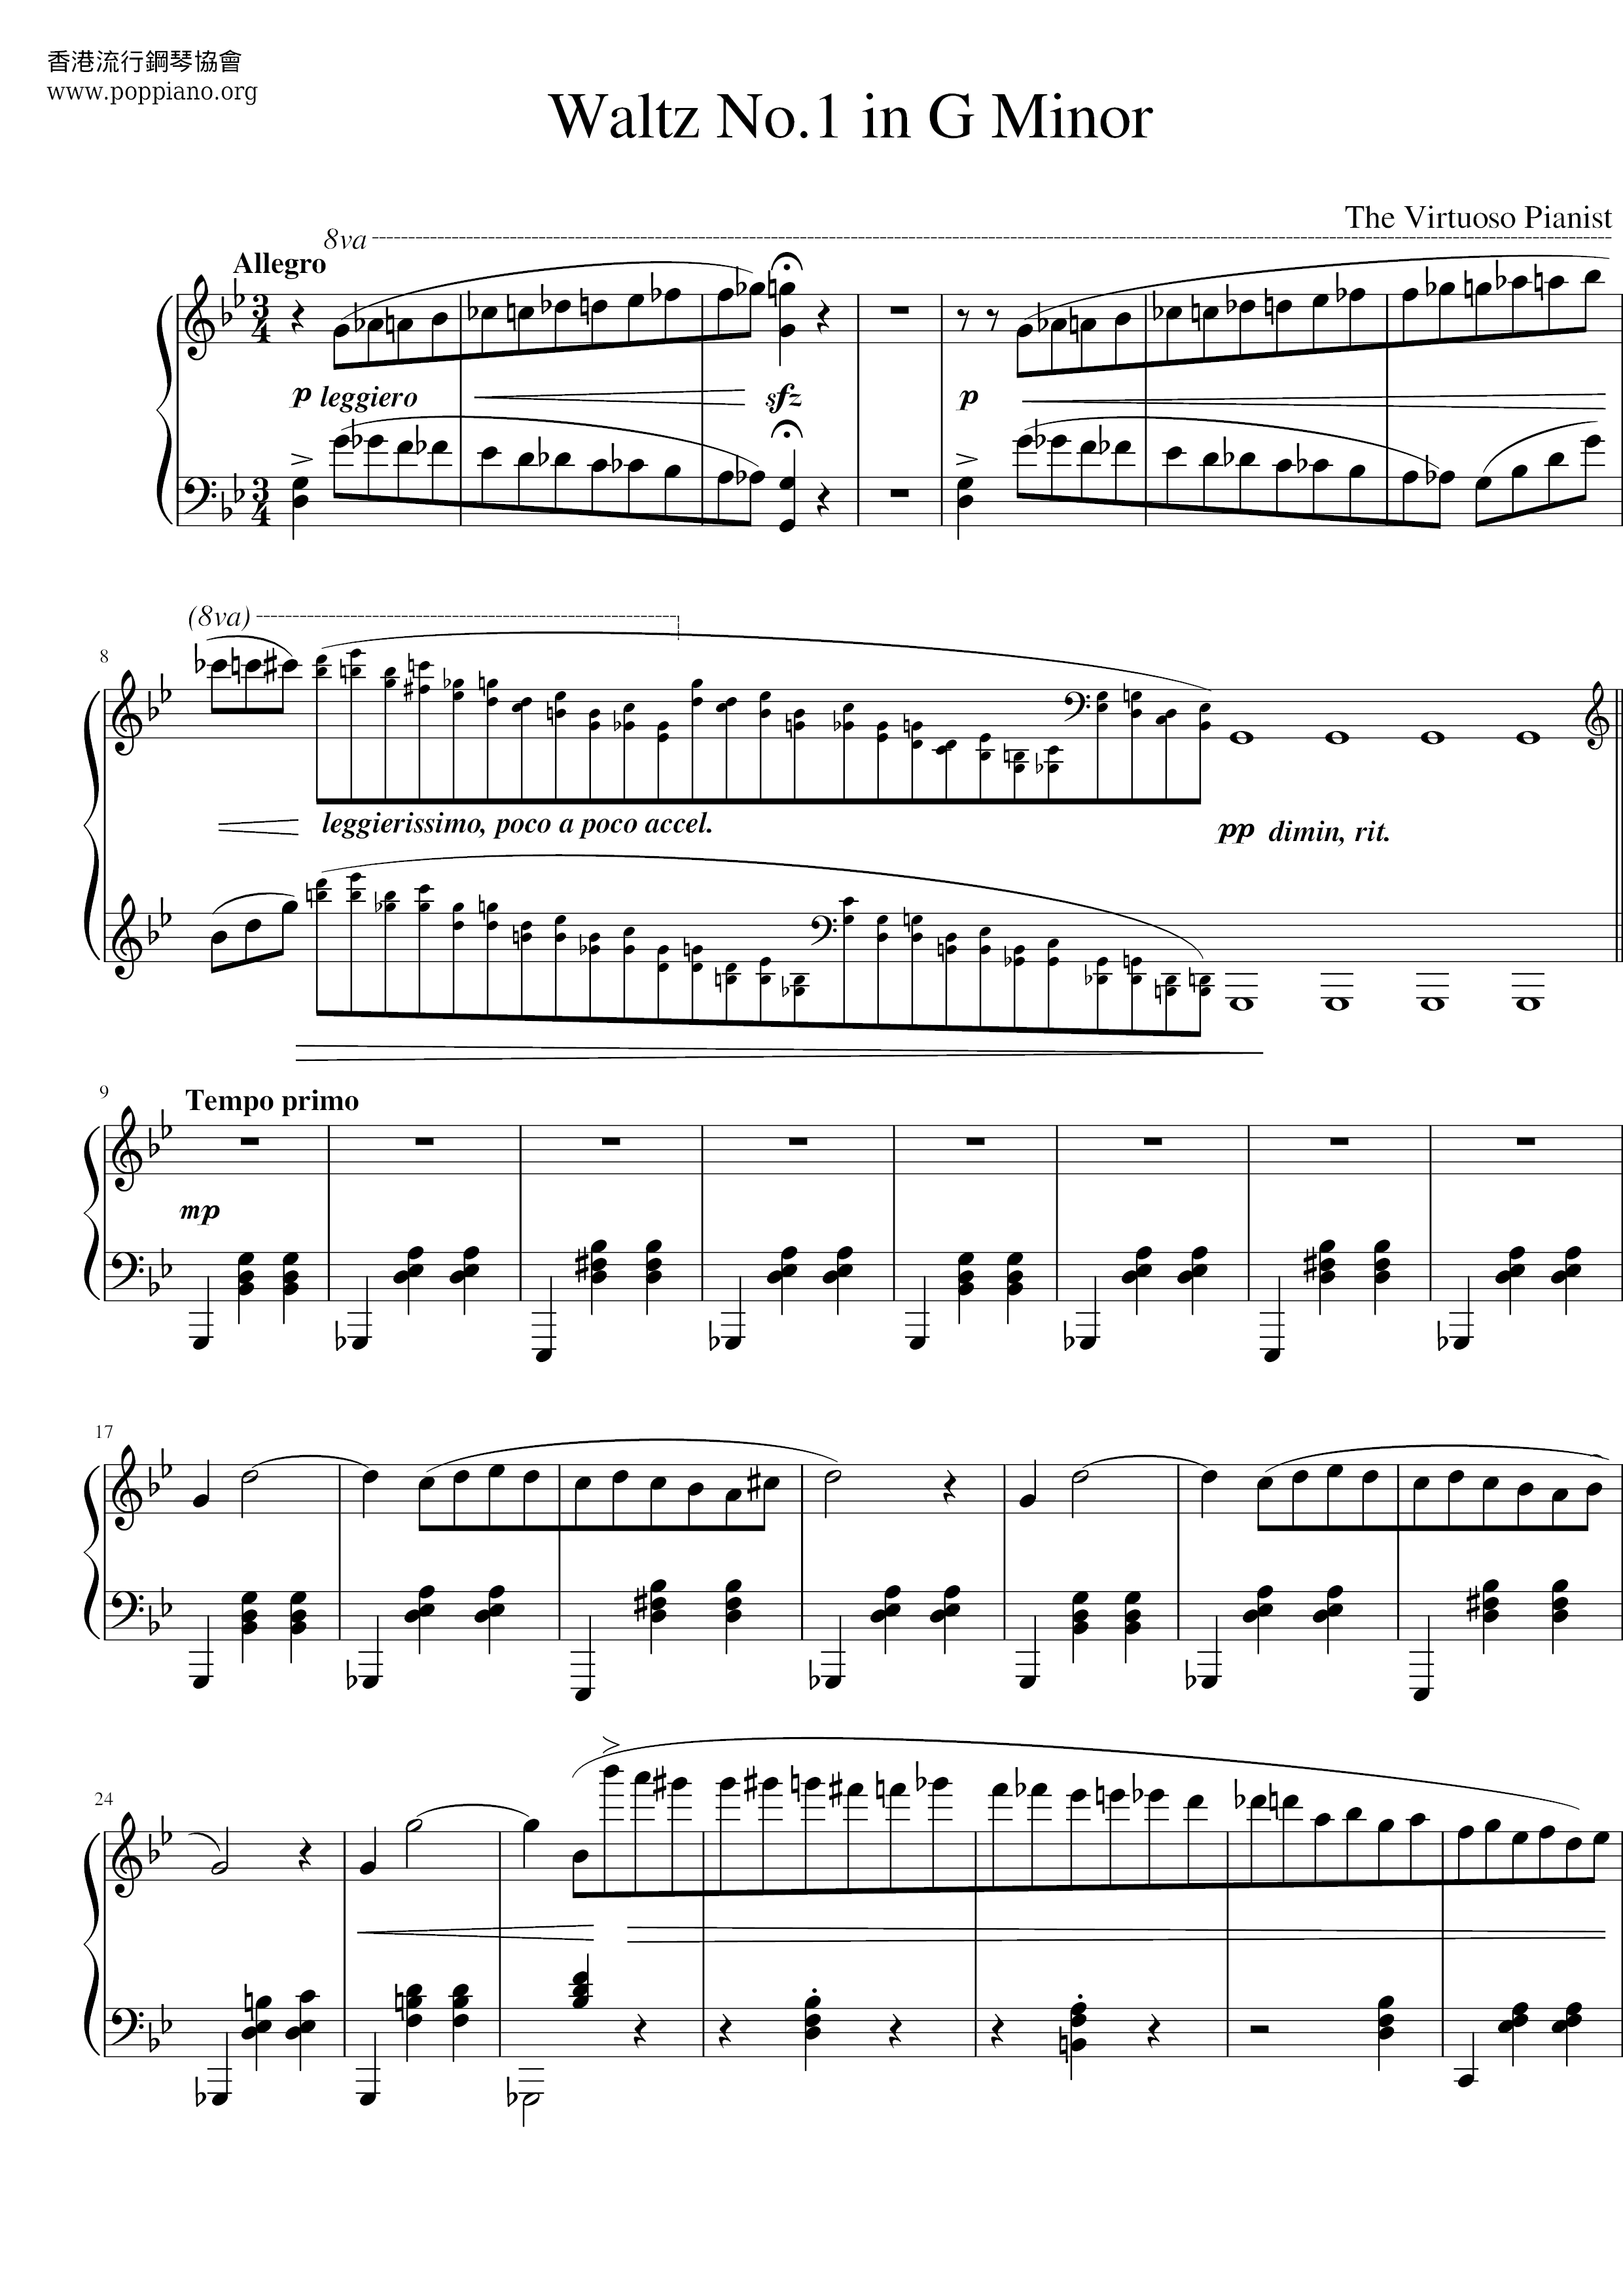 Waltz No.1 in G Minor Score